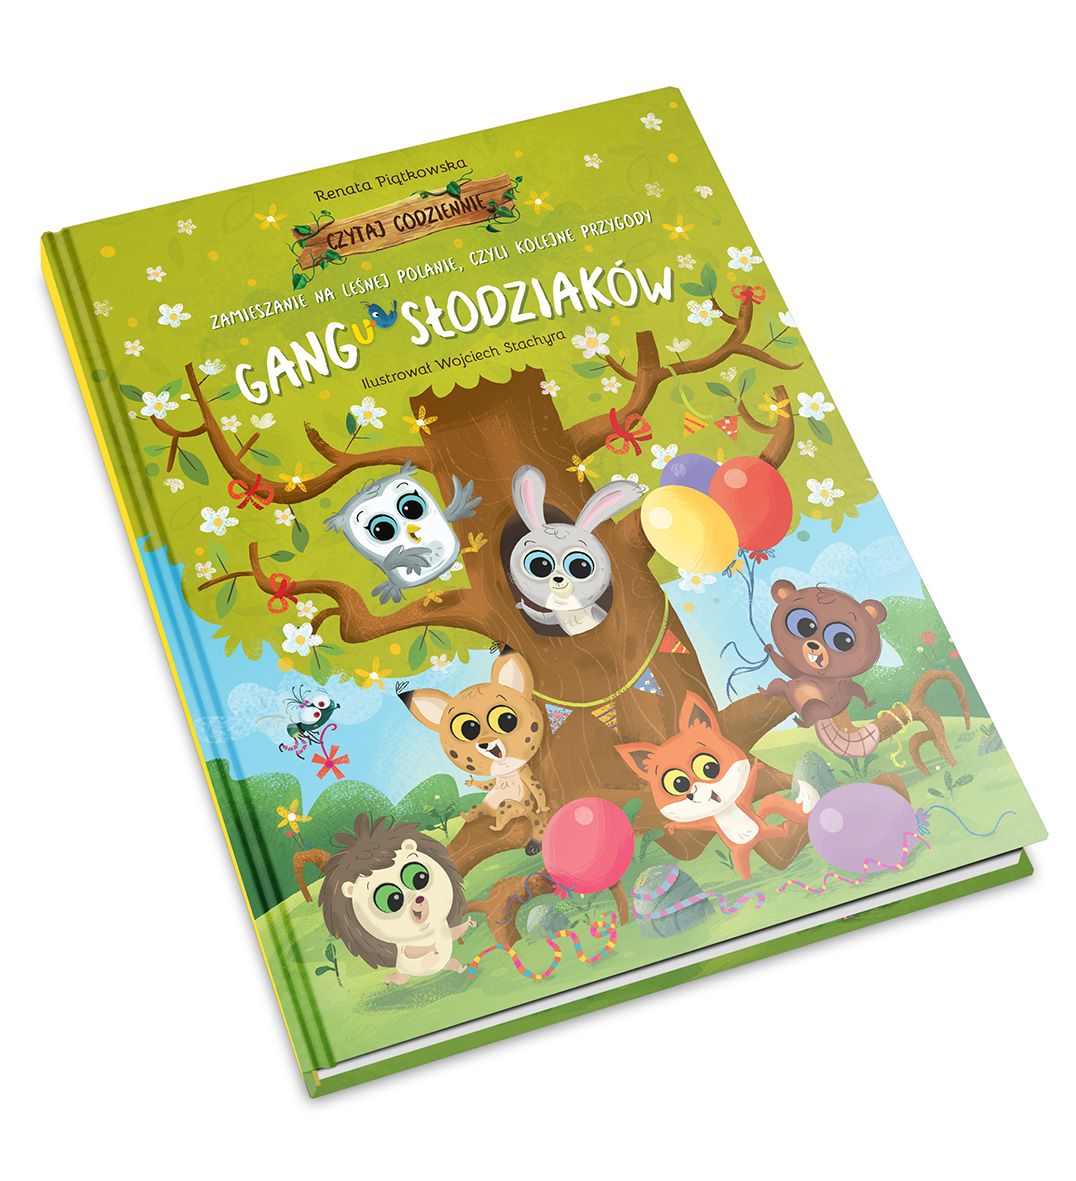 Już kilkaset tysięcy klientów Biedronki "wykleiło" sobie książkę o Słodziakach